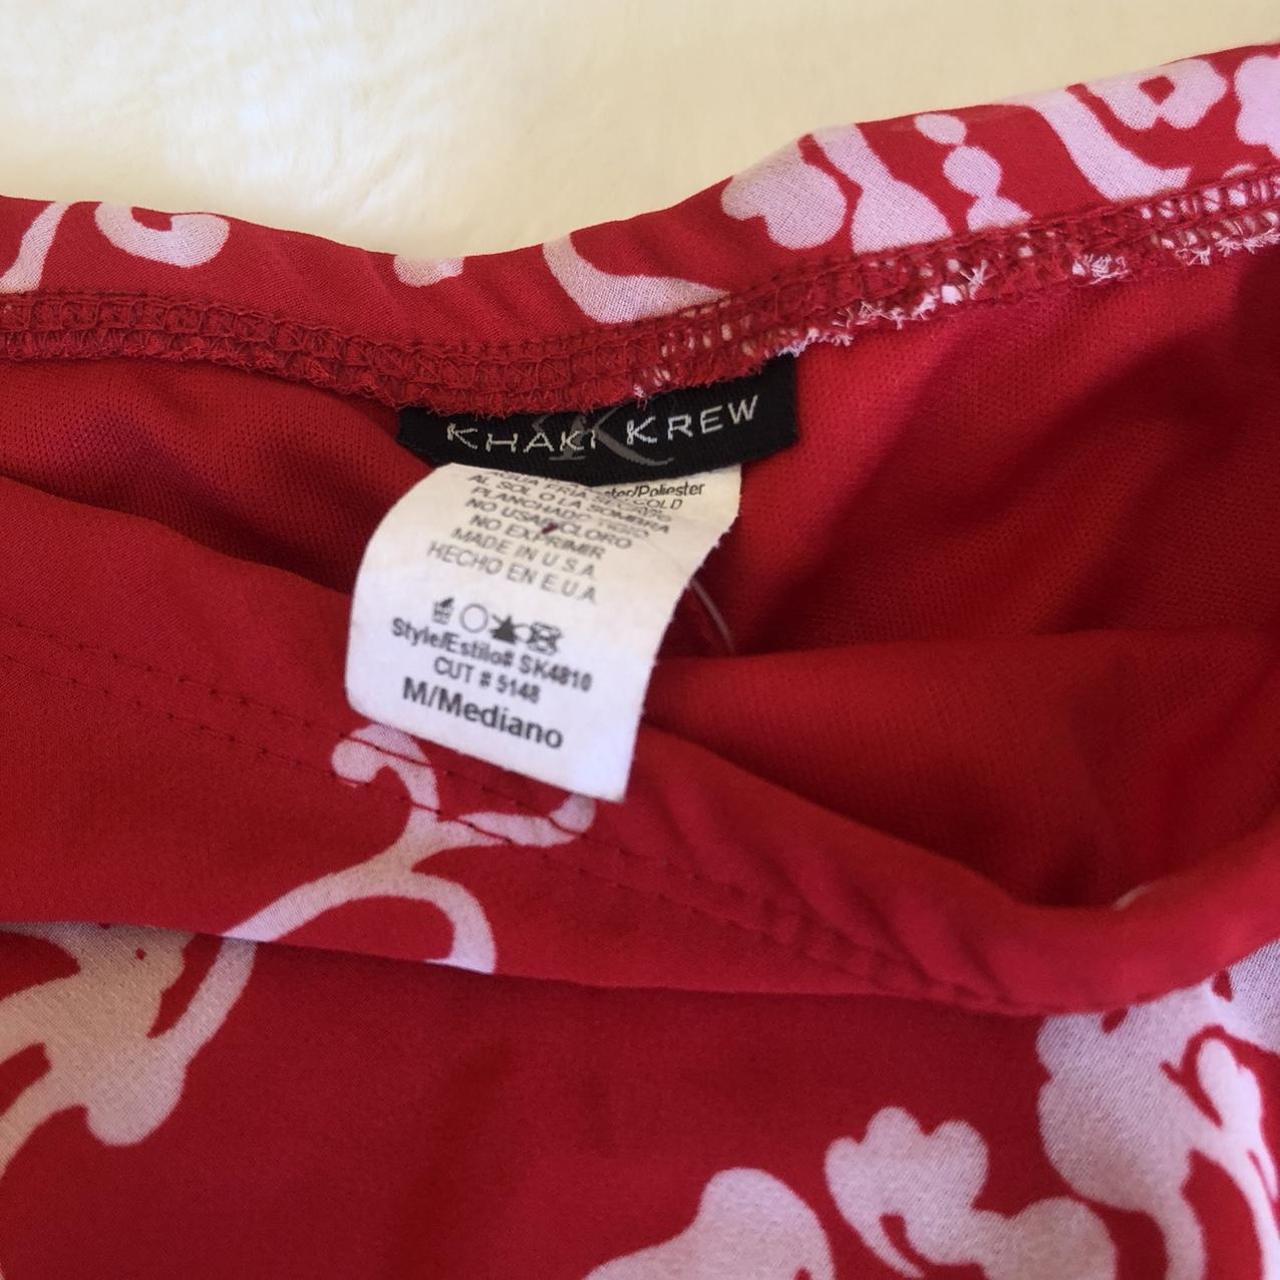 Khaki Krew Women's Red and White Skirt (4)